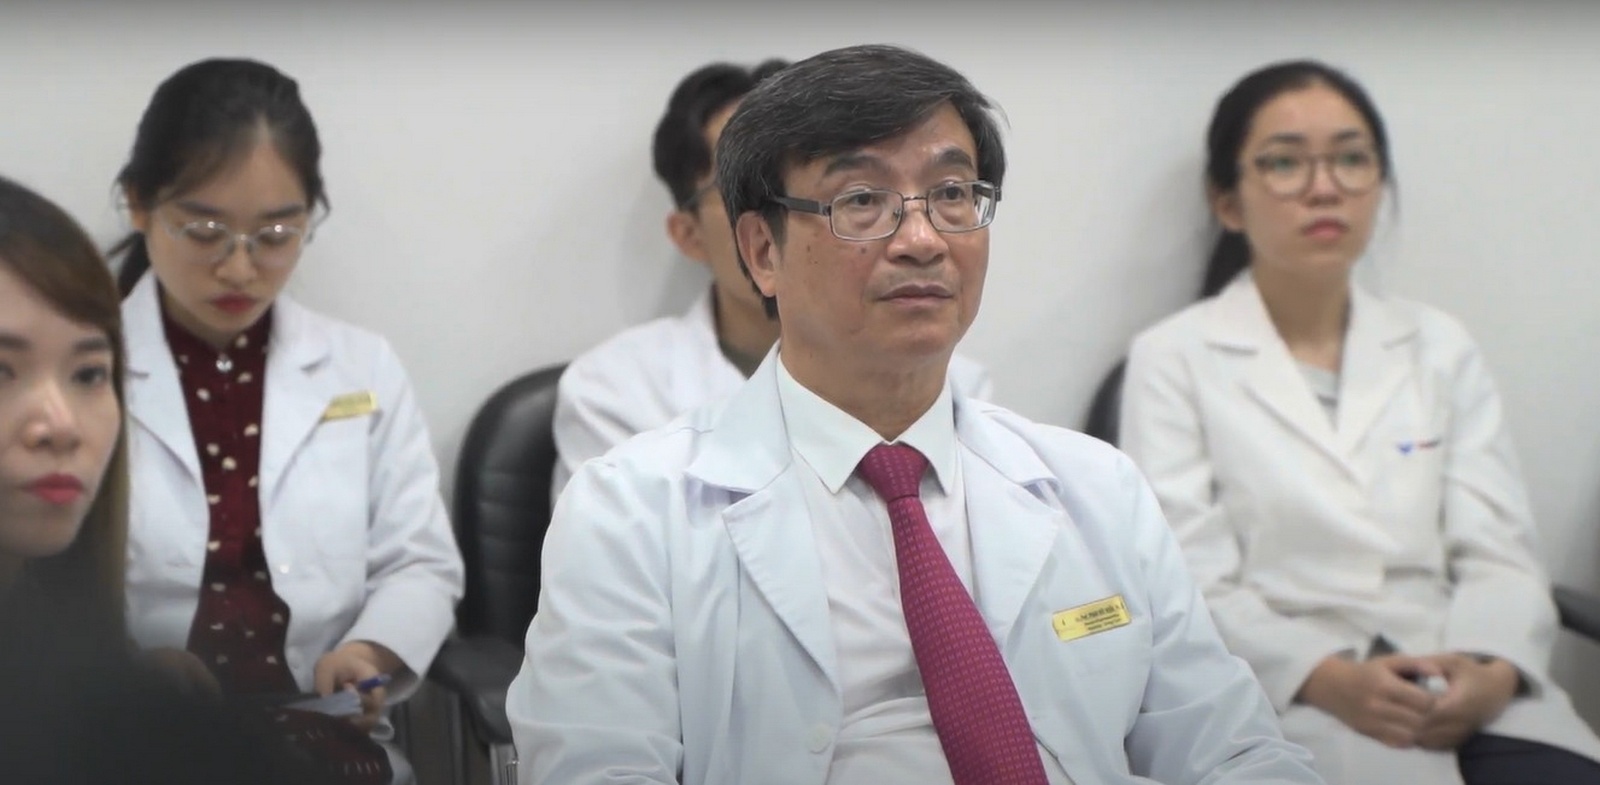 Thầy thuốc Nhân Dân PGS.TS.BS Phạm Đức Huấn (Giám đốc Trung tâm Tiêu hóa – Gan mật – Tiết niệu Vinmec) dành nhiều tâm huyết trong việc tổ chức ghép gan cấp cứu tại Vinmec